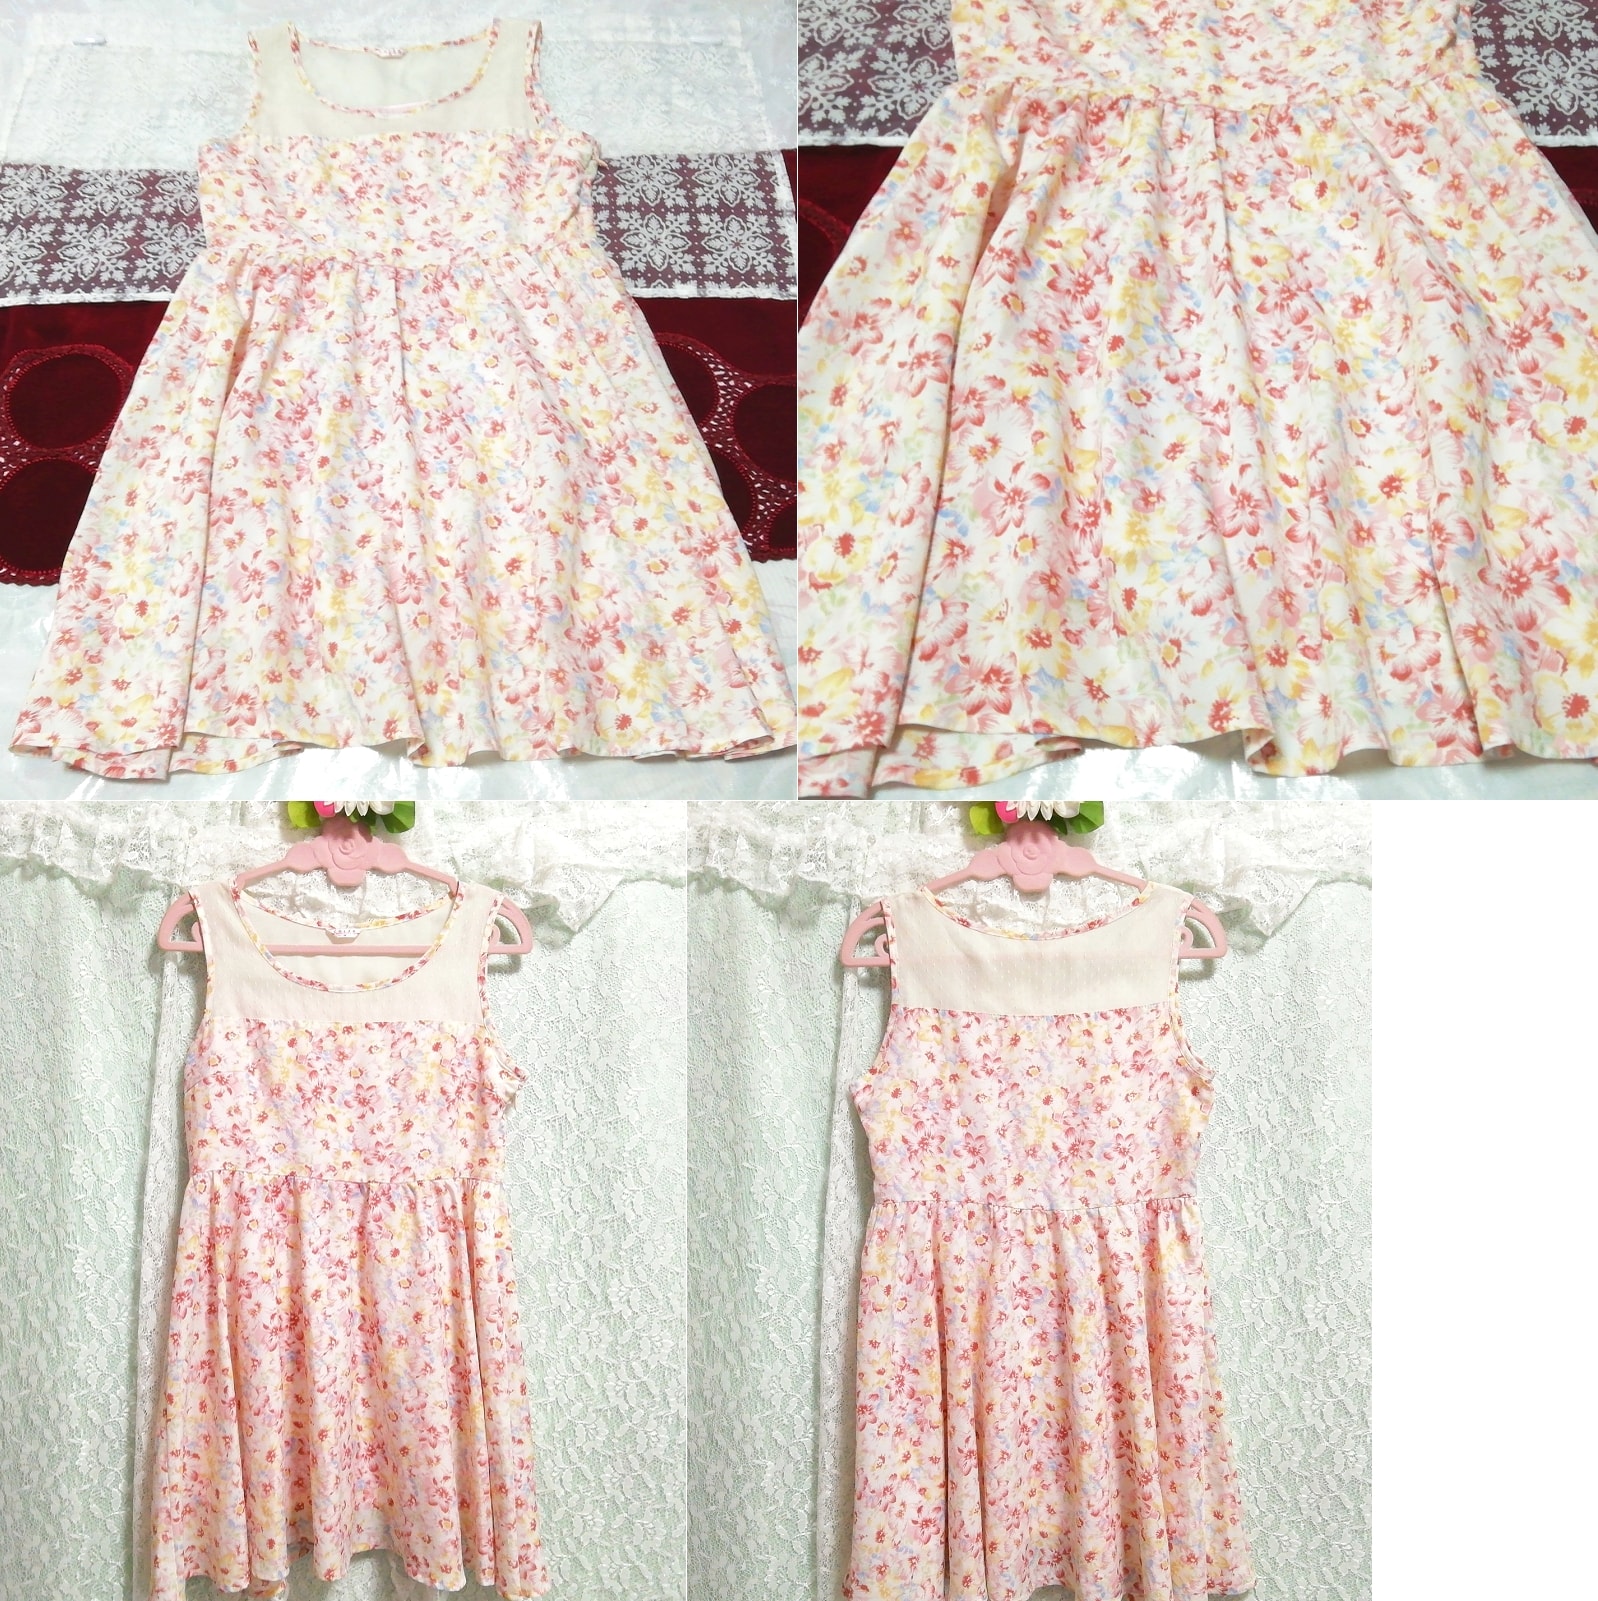 Pink light blue yellow floral pattern chiffon sleeveless negligee nightgown mini dress, mini skirt, m size